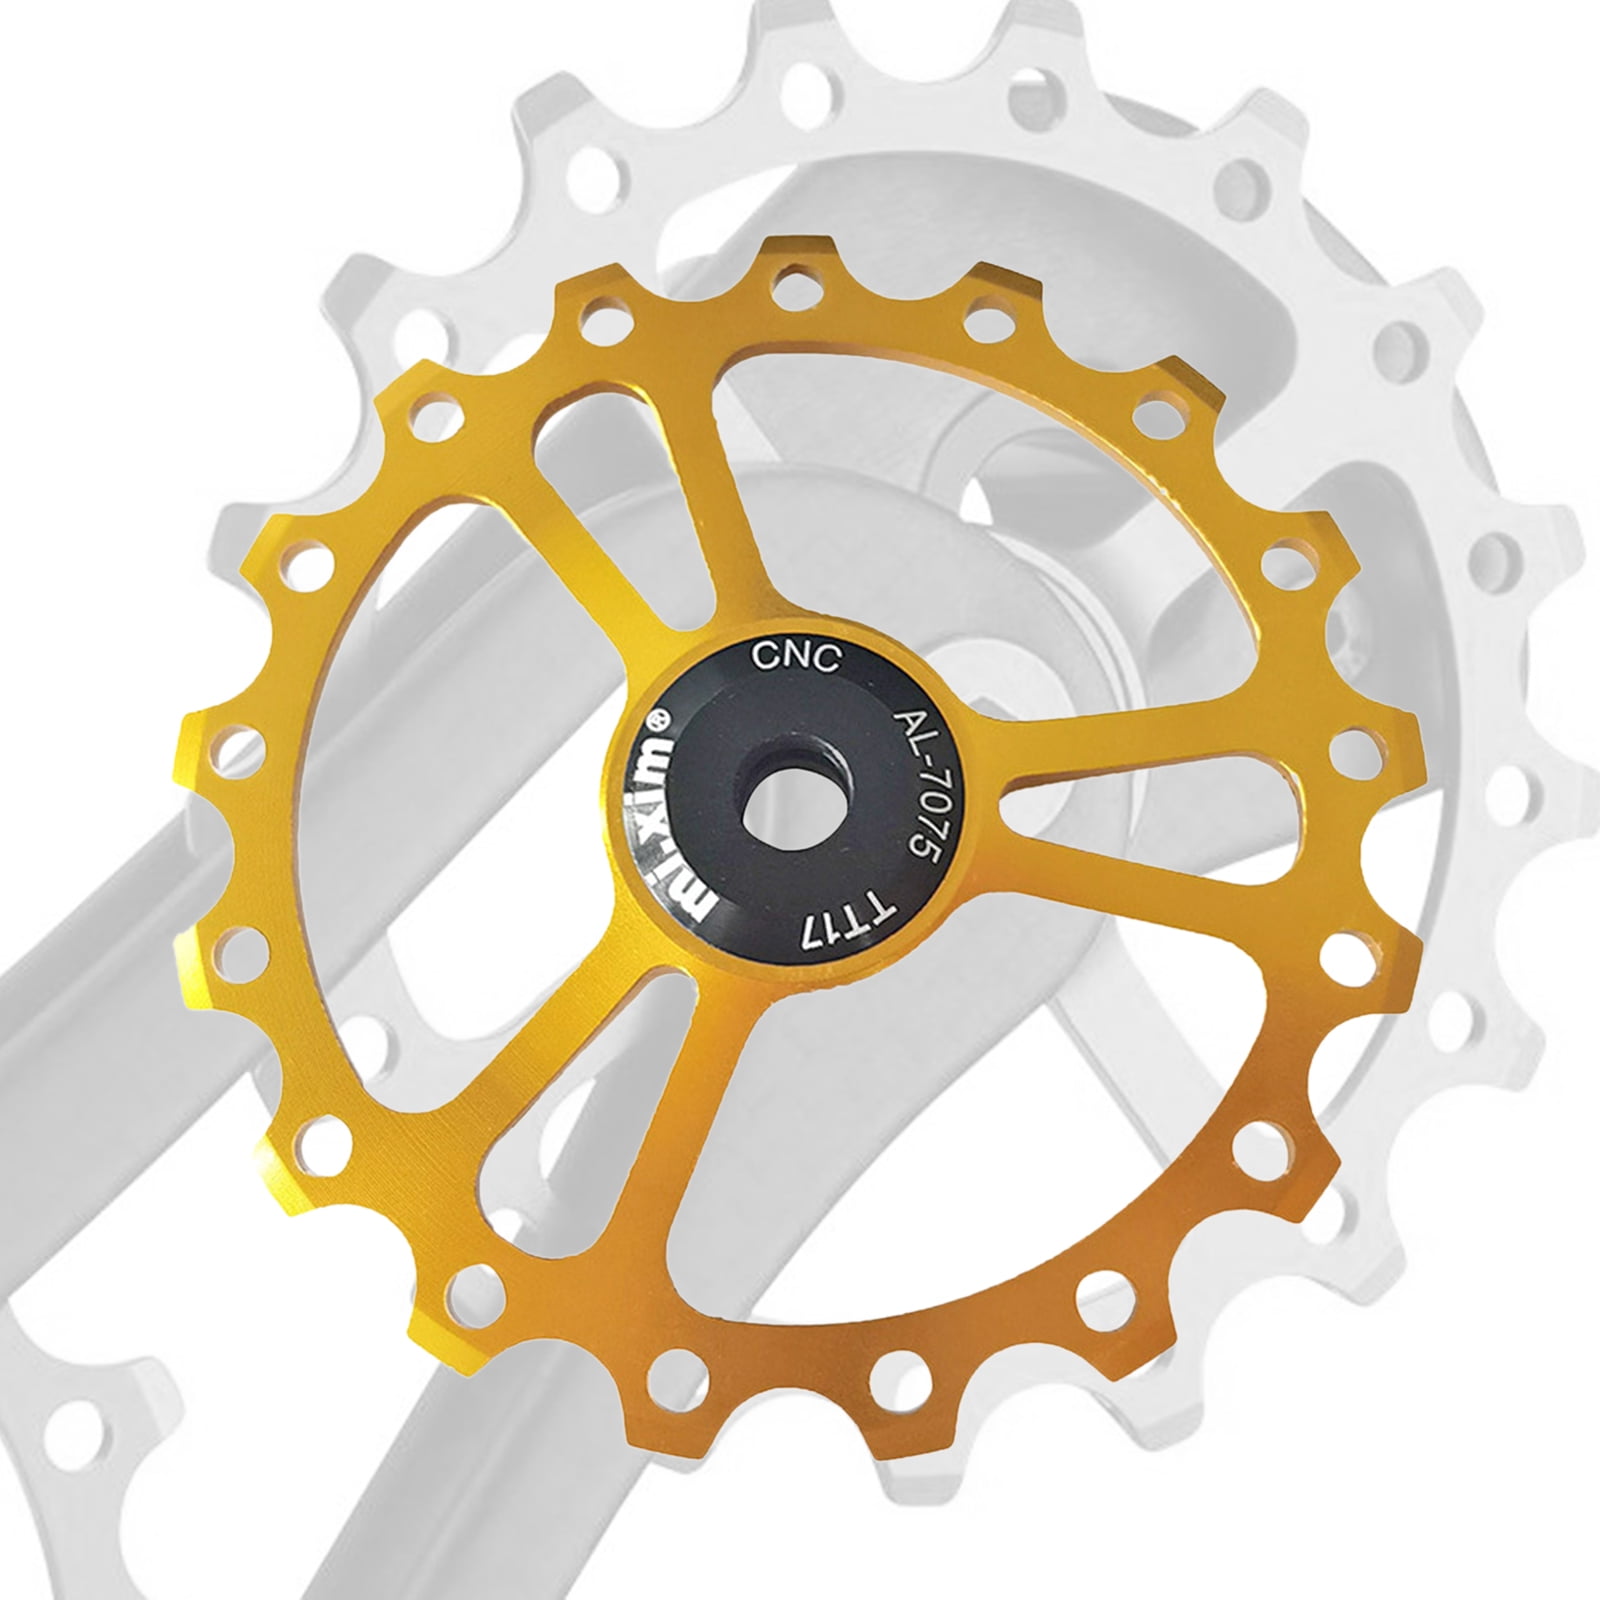 2 PCS Bike Rear Derailleur Pulley Jockey Wheel Bicycle Guide Wheel for 7/8/9/10/11/12 Speed 